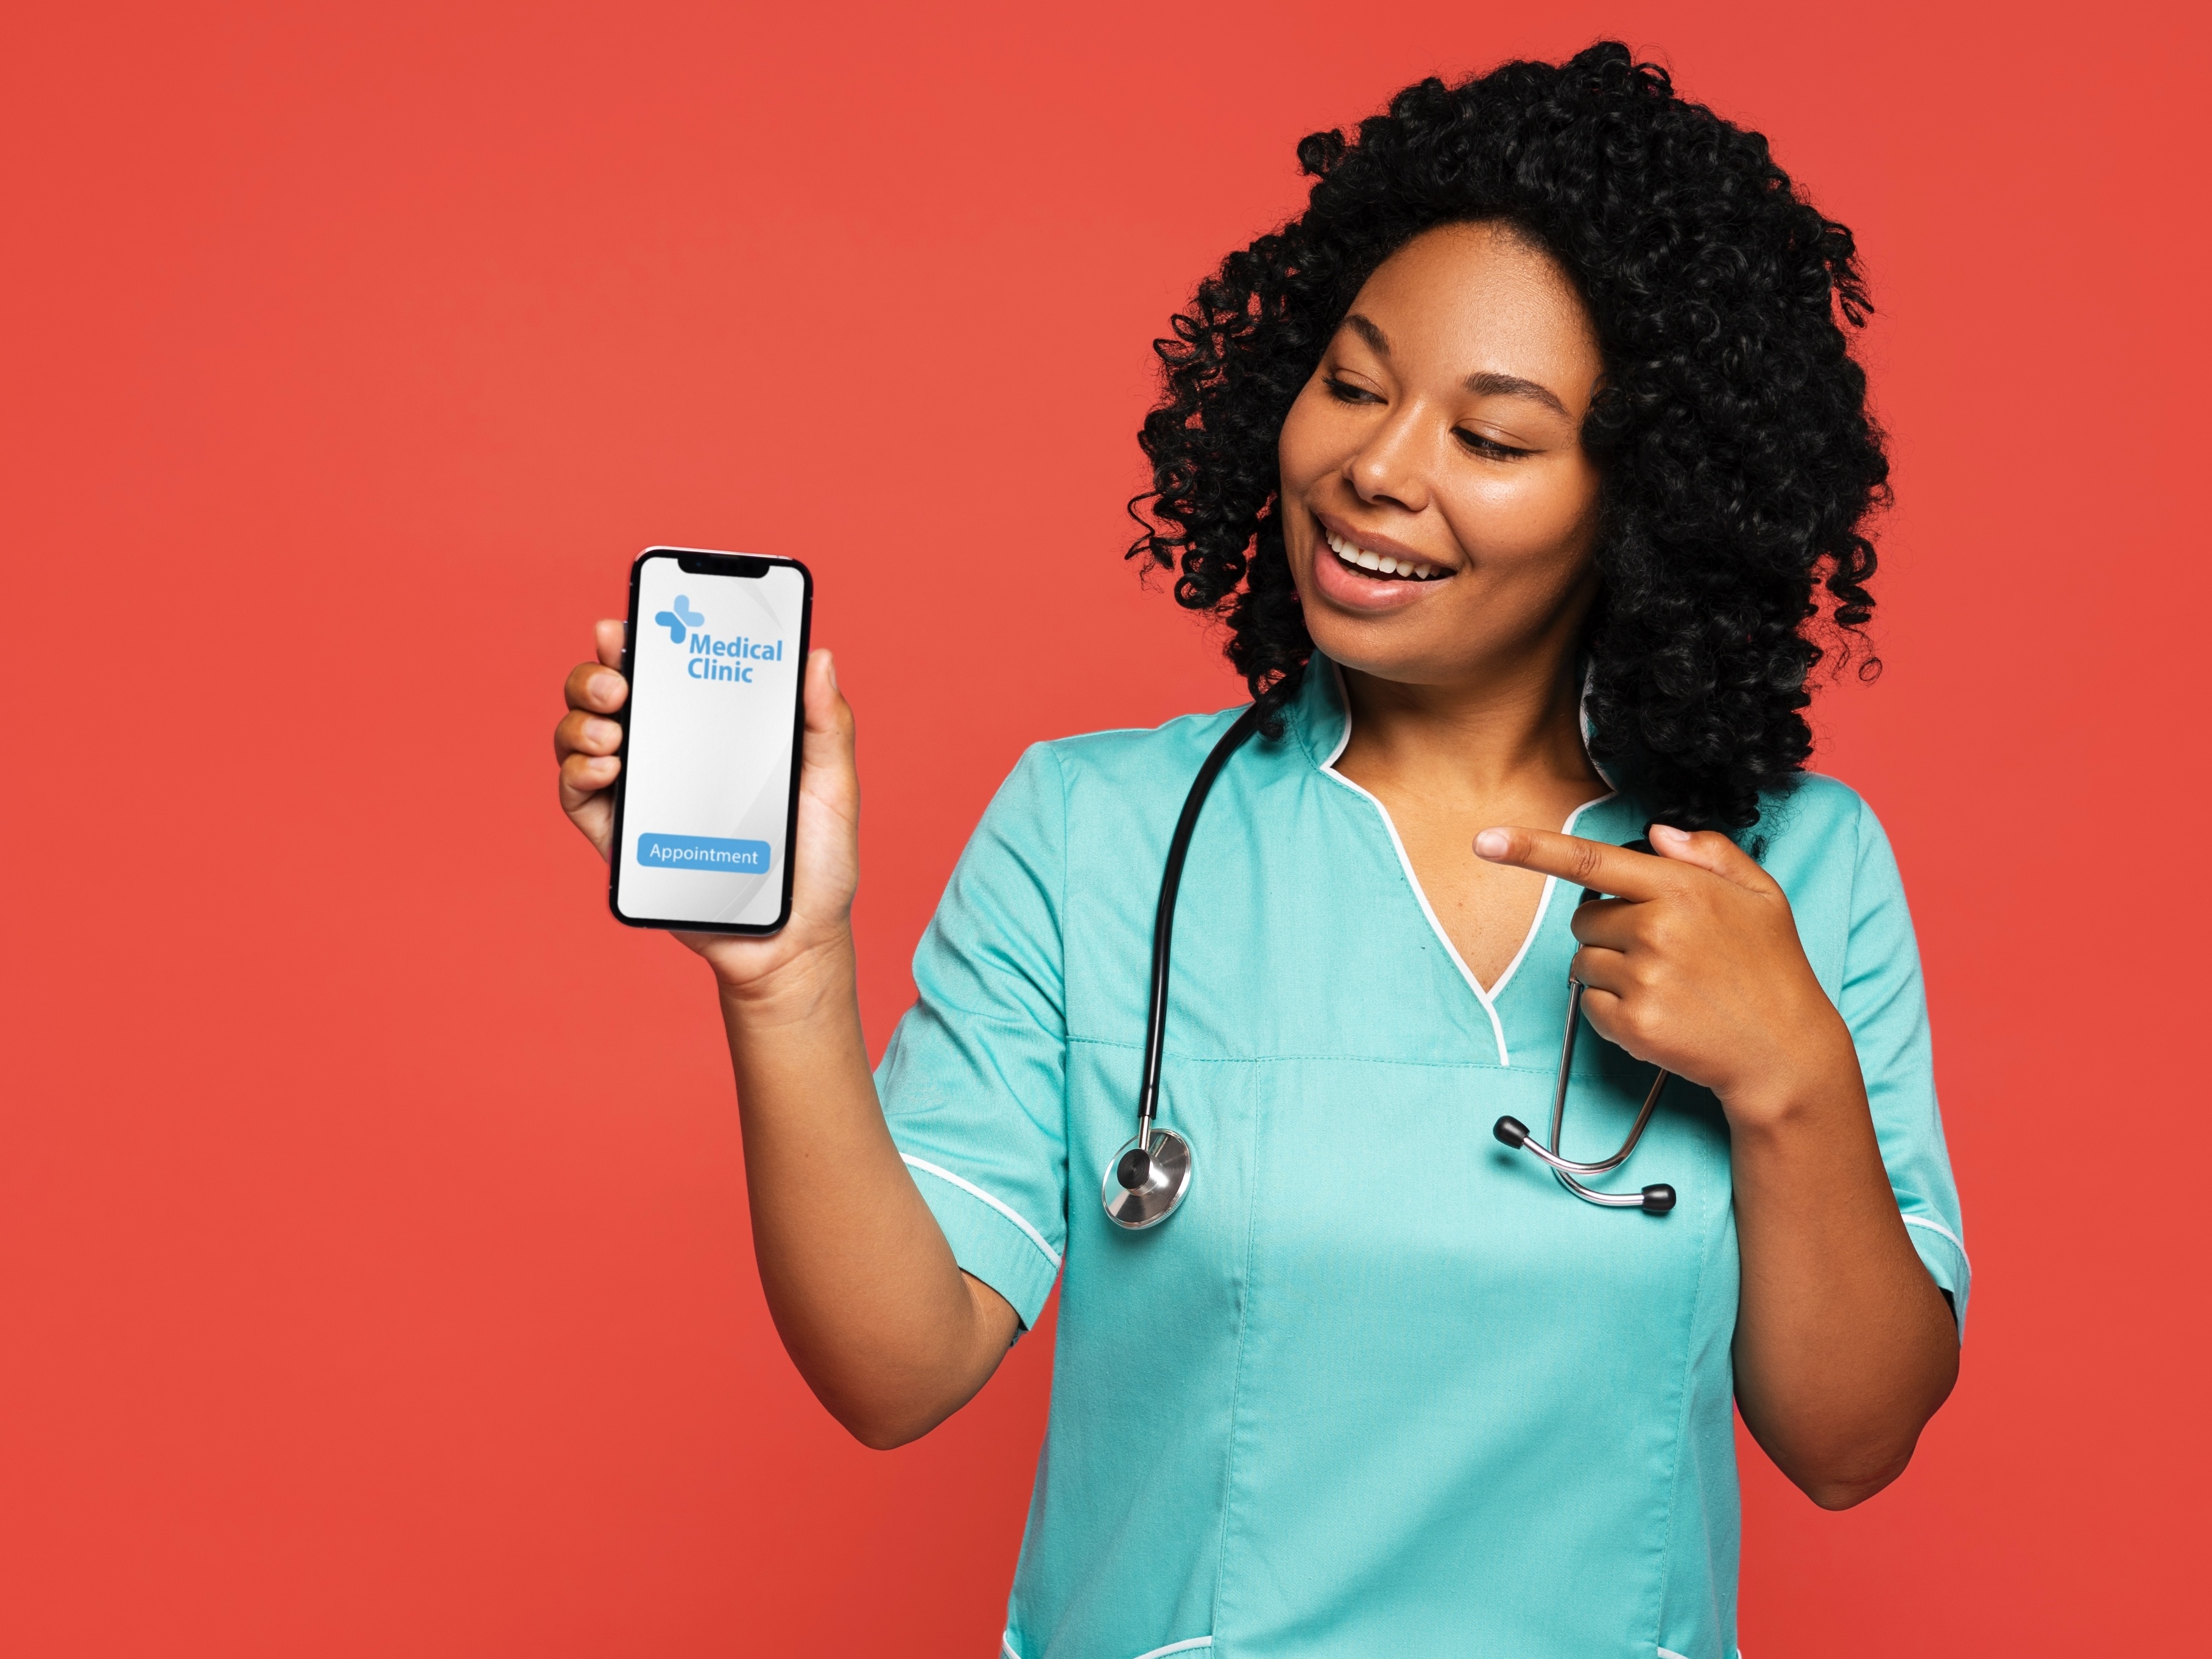 Aplicativo de consulta médica: veja cinco opções para baixar no celular